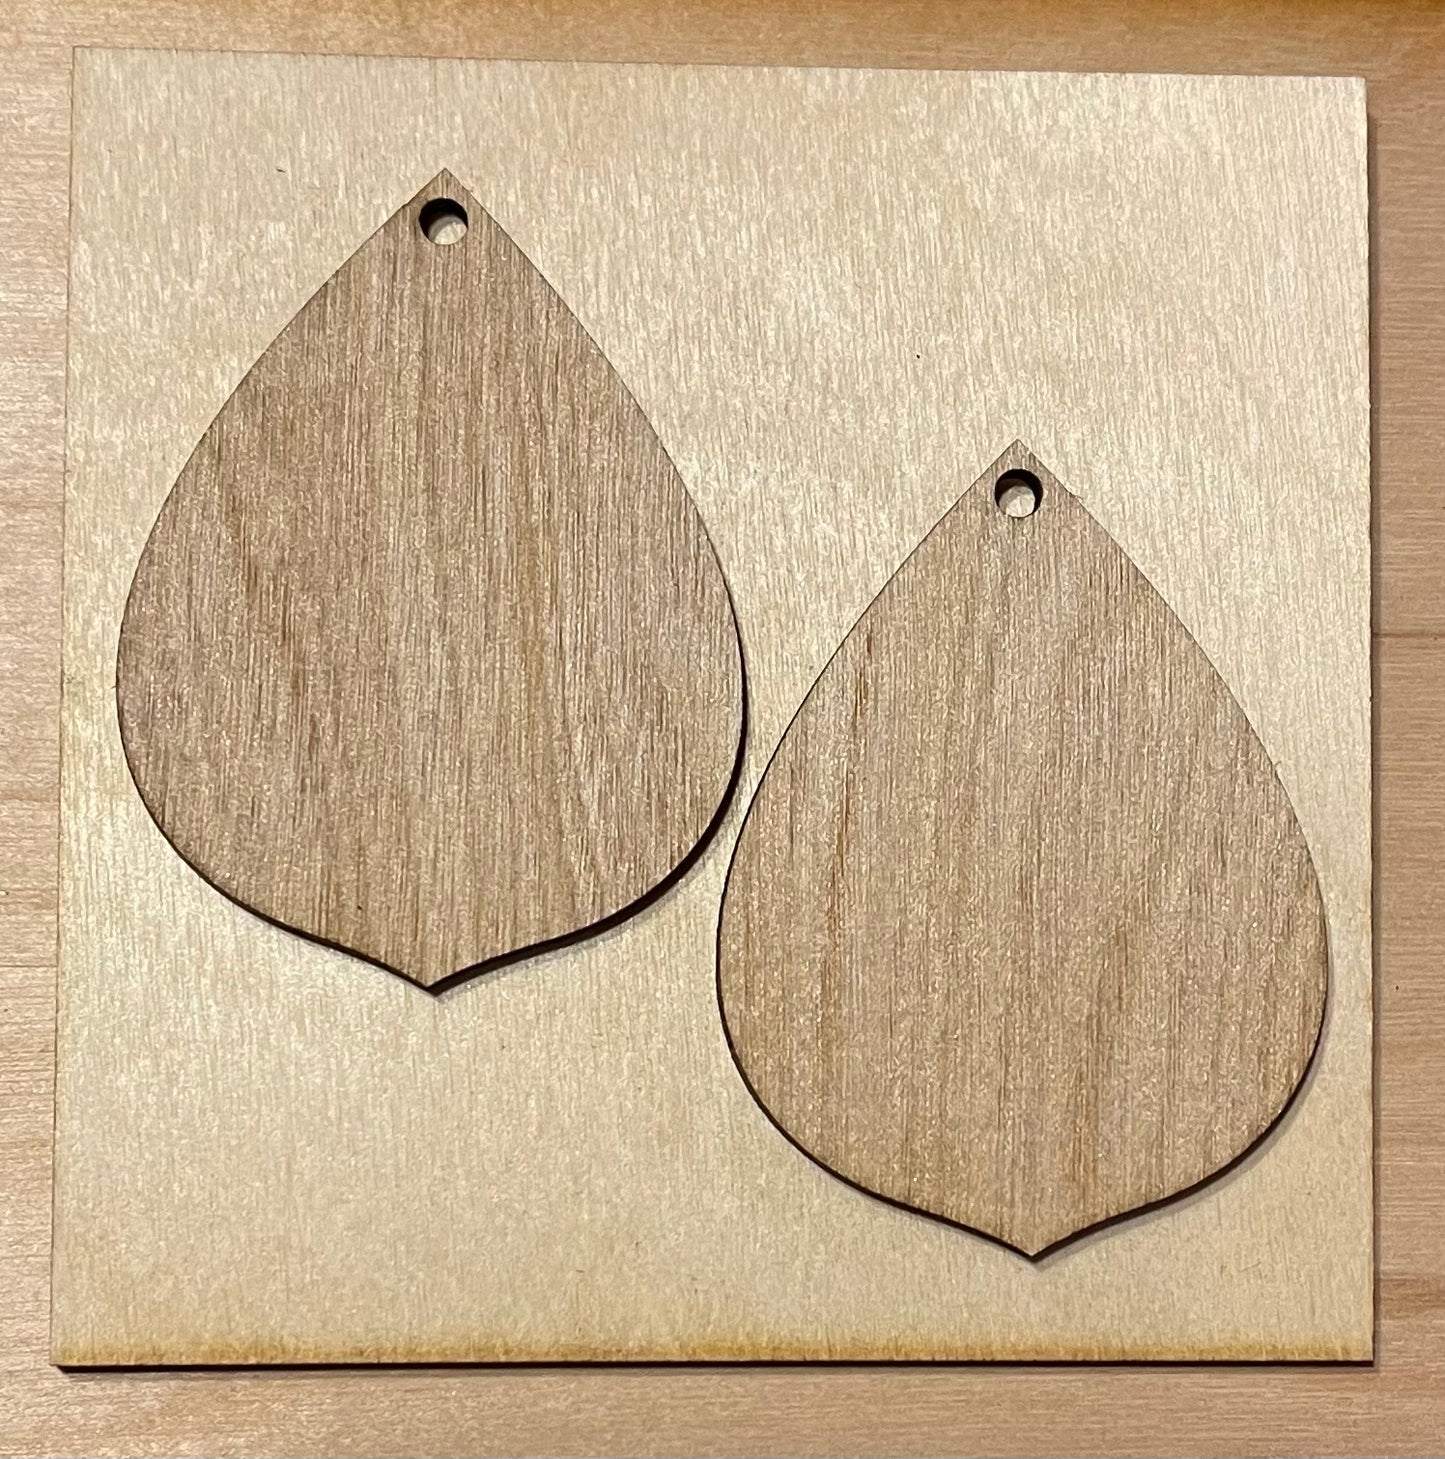 Blank Wood Earrings. DIY jewelry. Unfinished laser cut wood jewelry. Wood earring blanks. Unfinished wood earrings. Wood jewelry blanks.